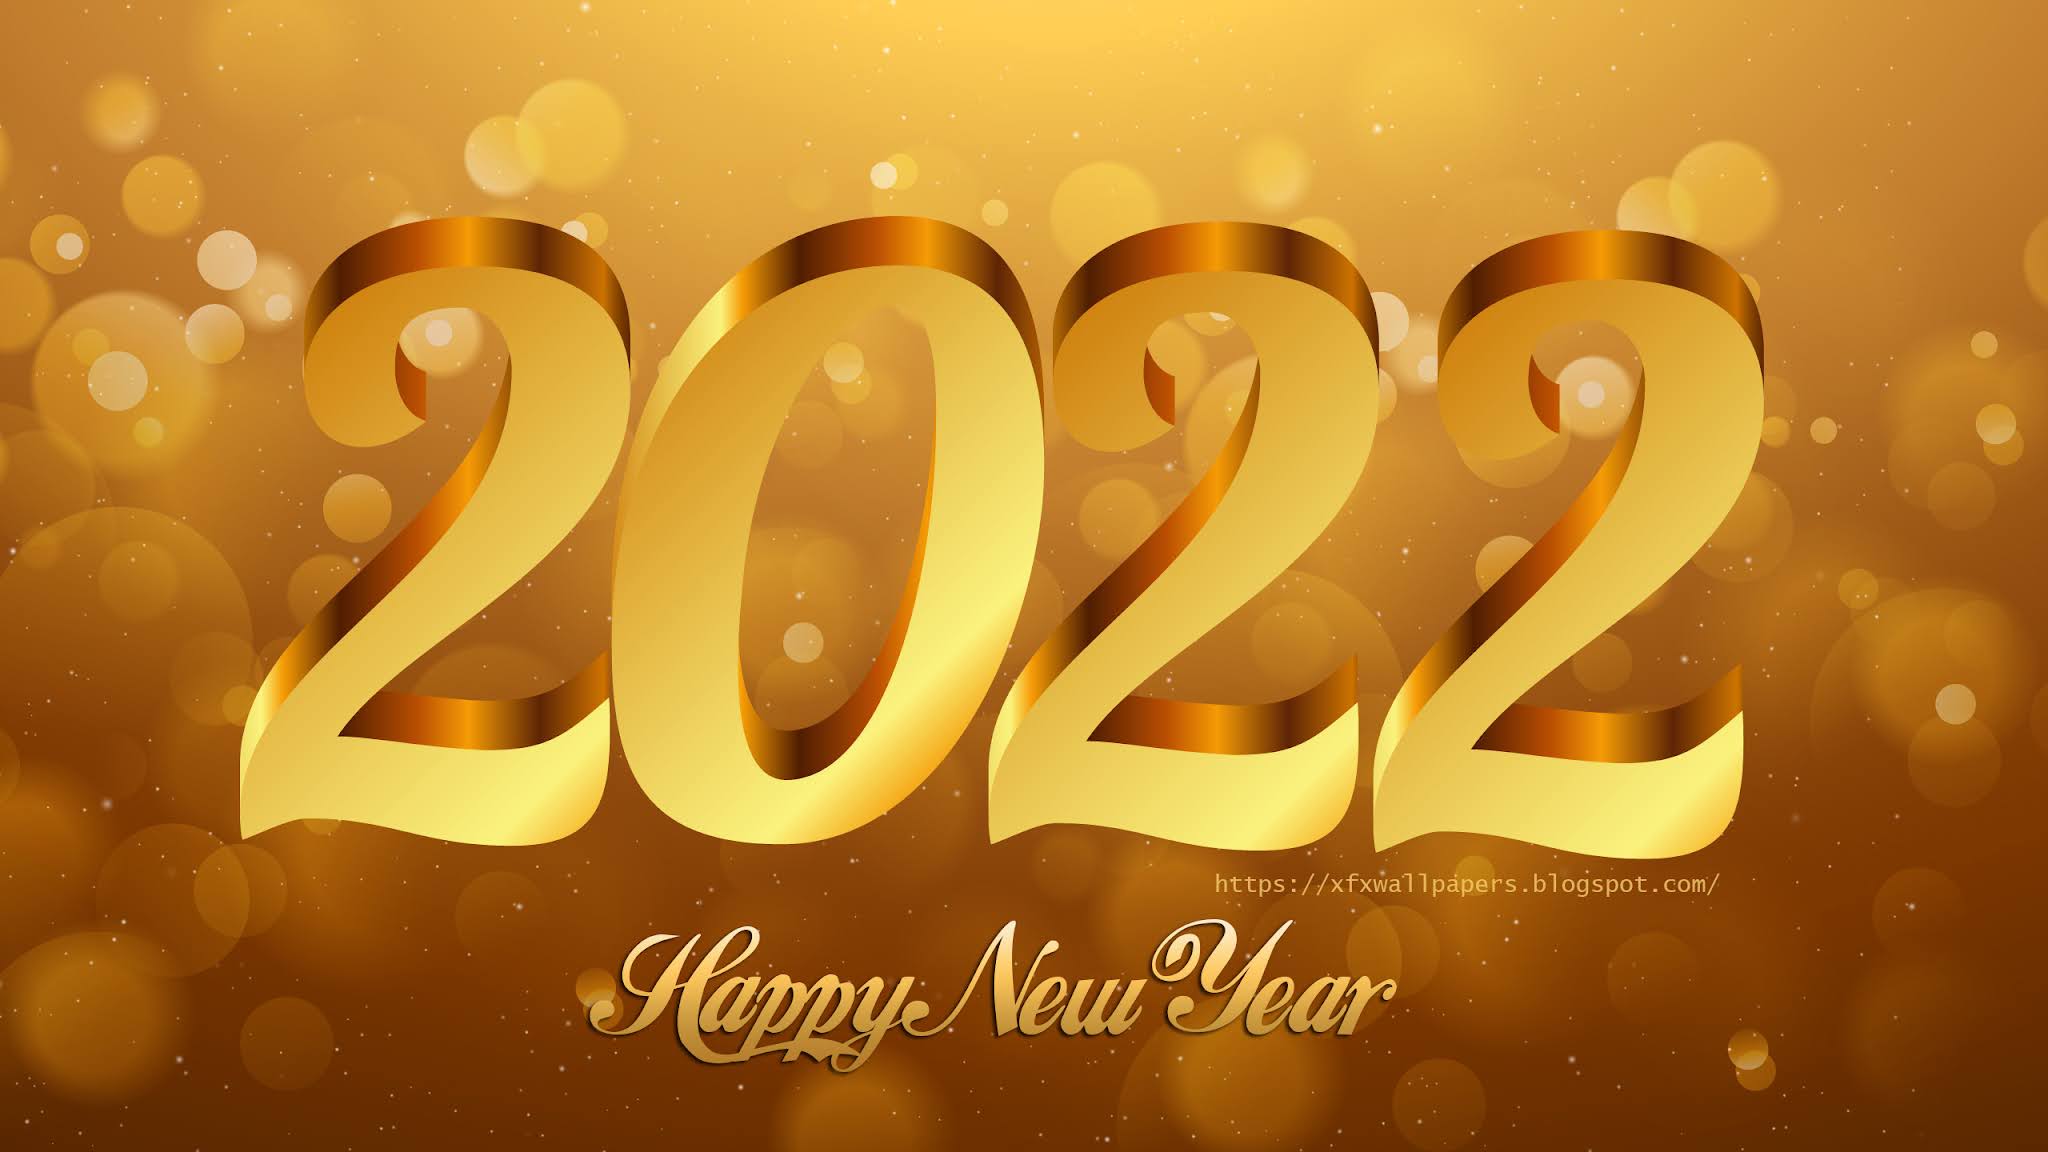 2022 Happy New Year Elegant Golden Text Wallpaper - 4k Wallpapers